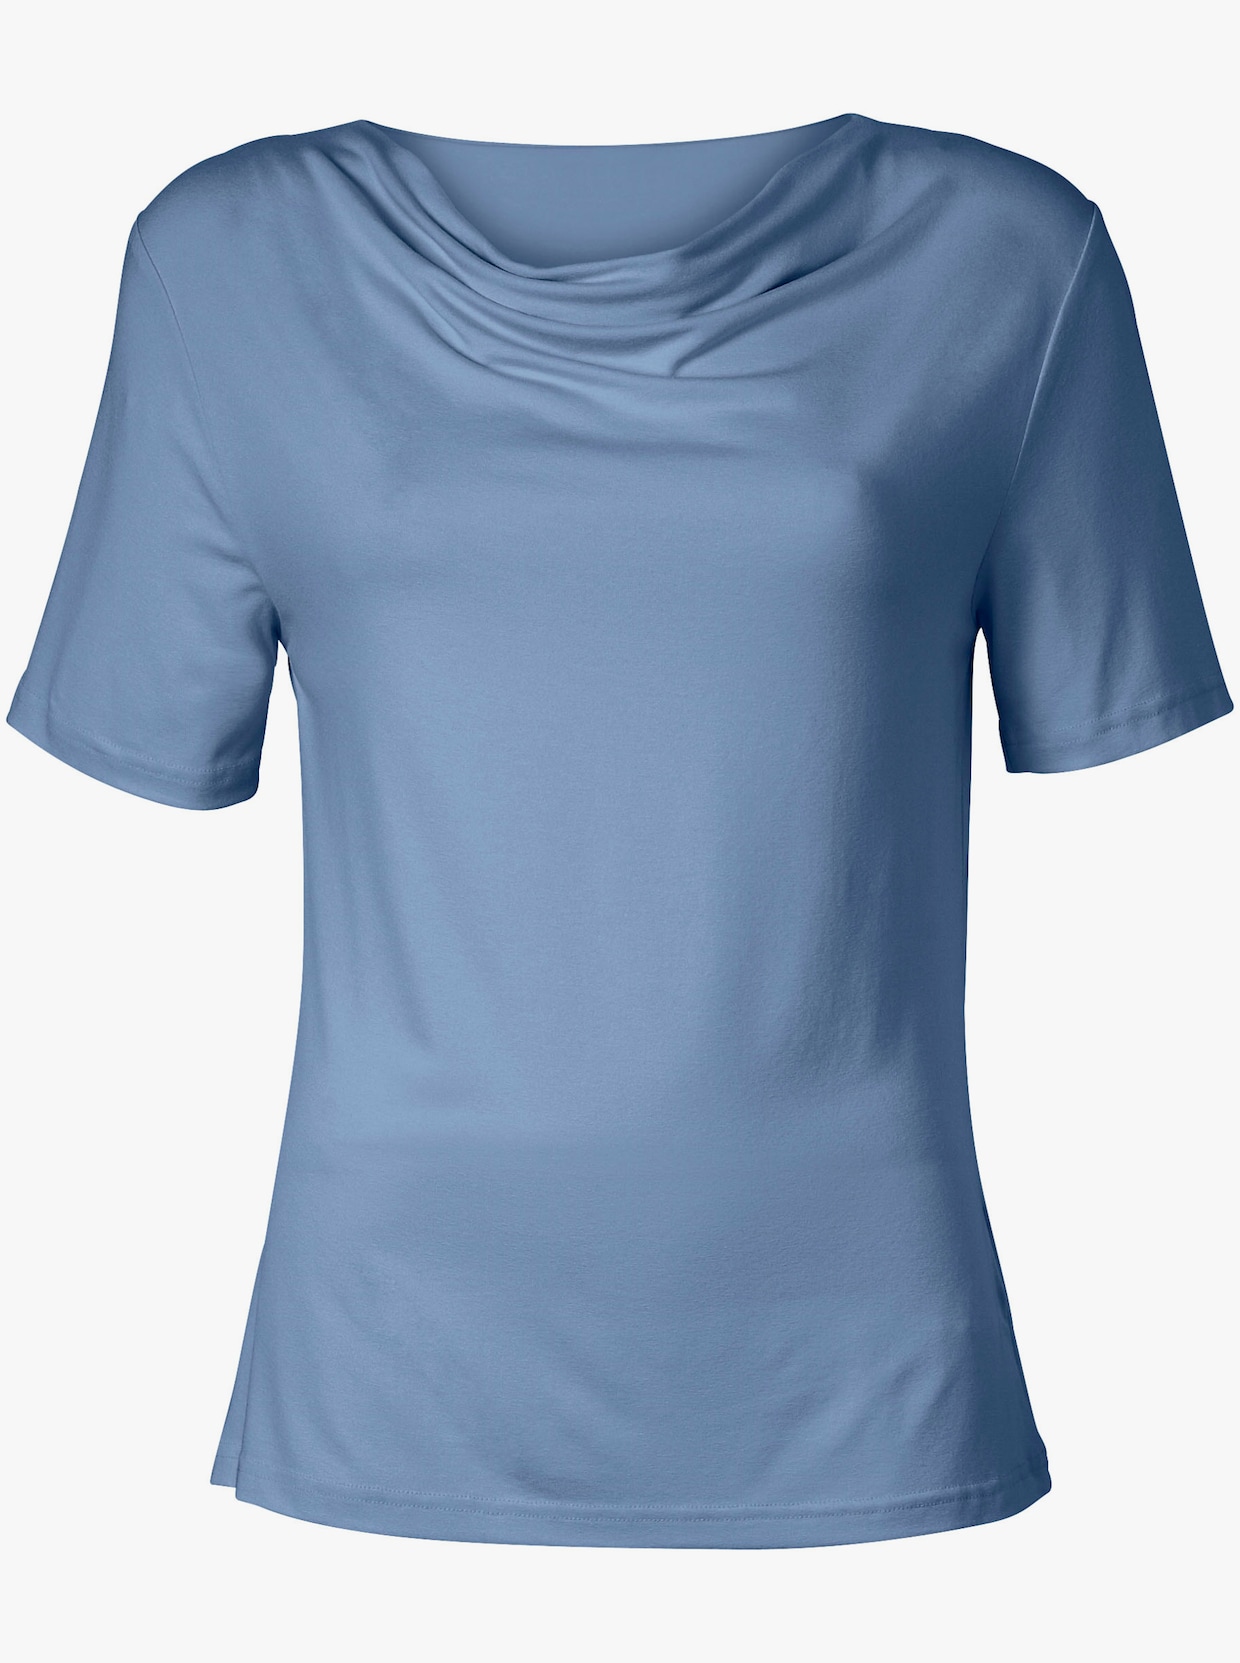 Tričko s vodopádovým golierom - bledomodrá